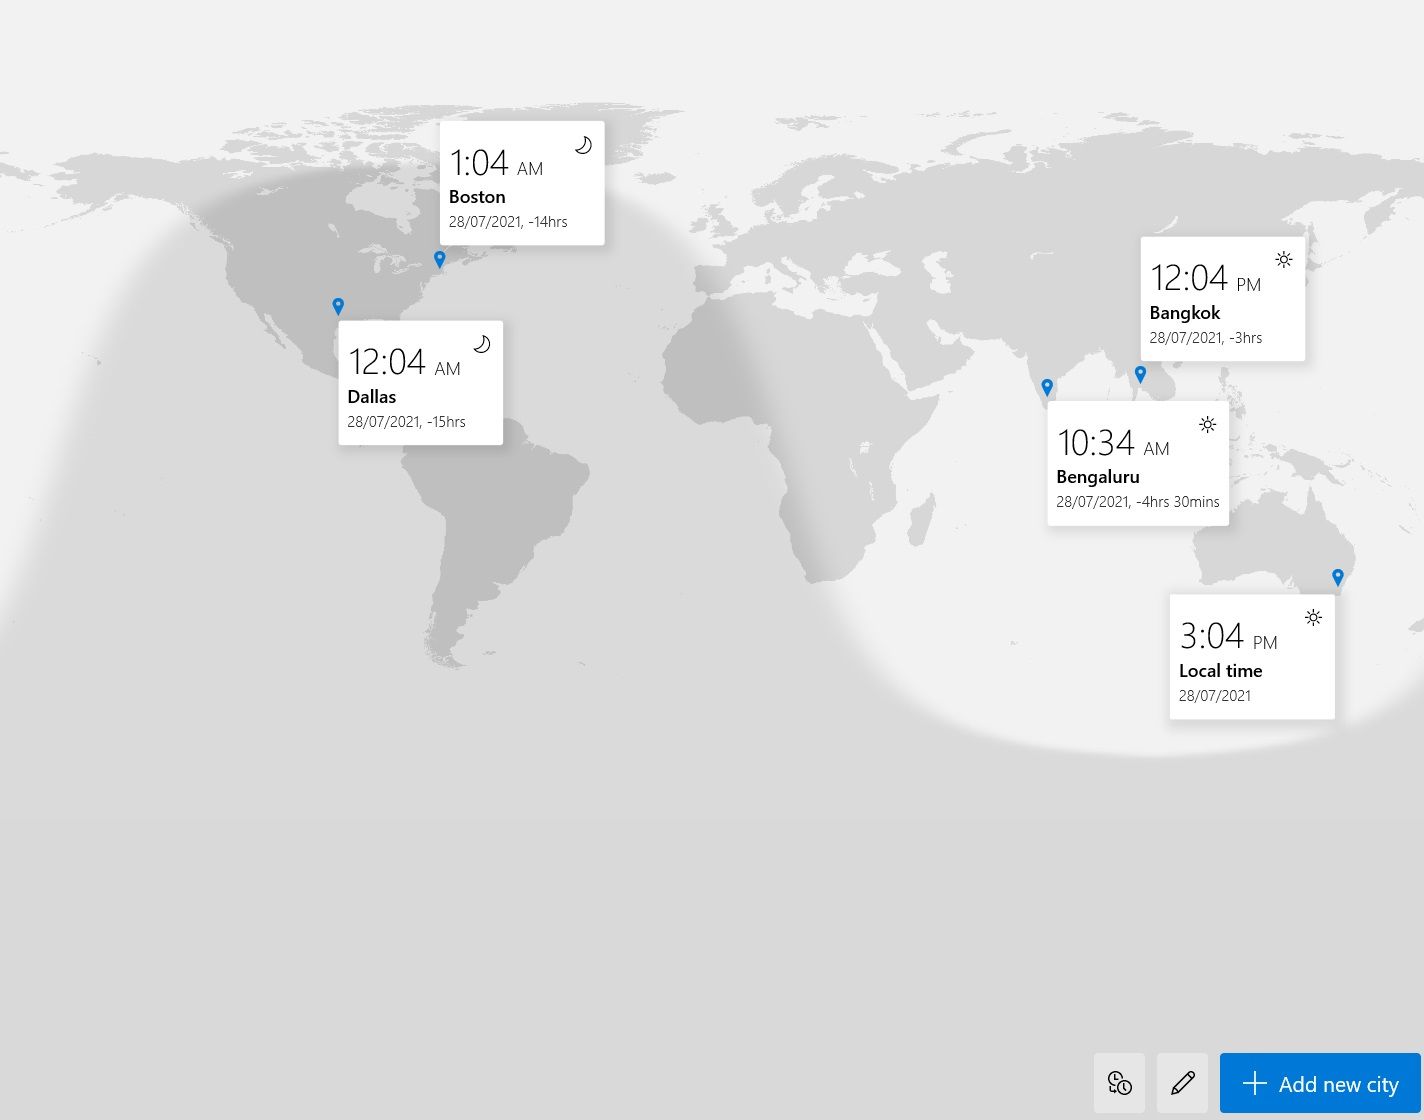 world clock 1 - Come utilizzare l’app Sveglia e Orologio mondiale su Windows 10